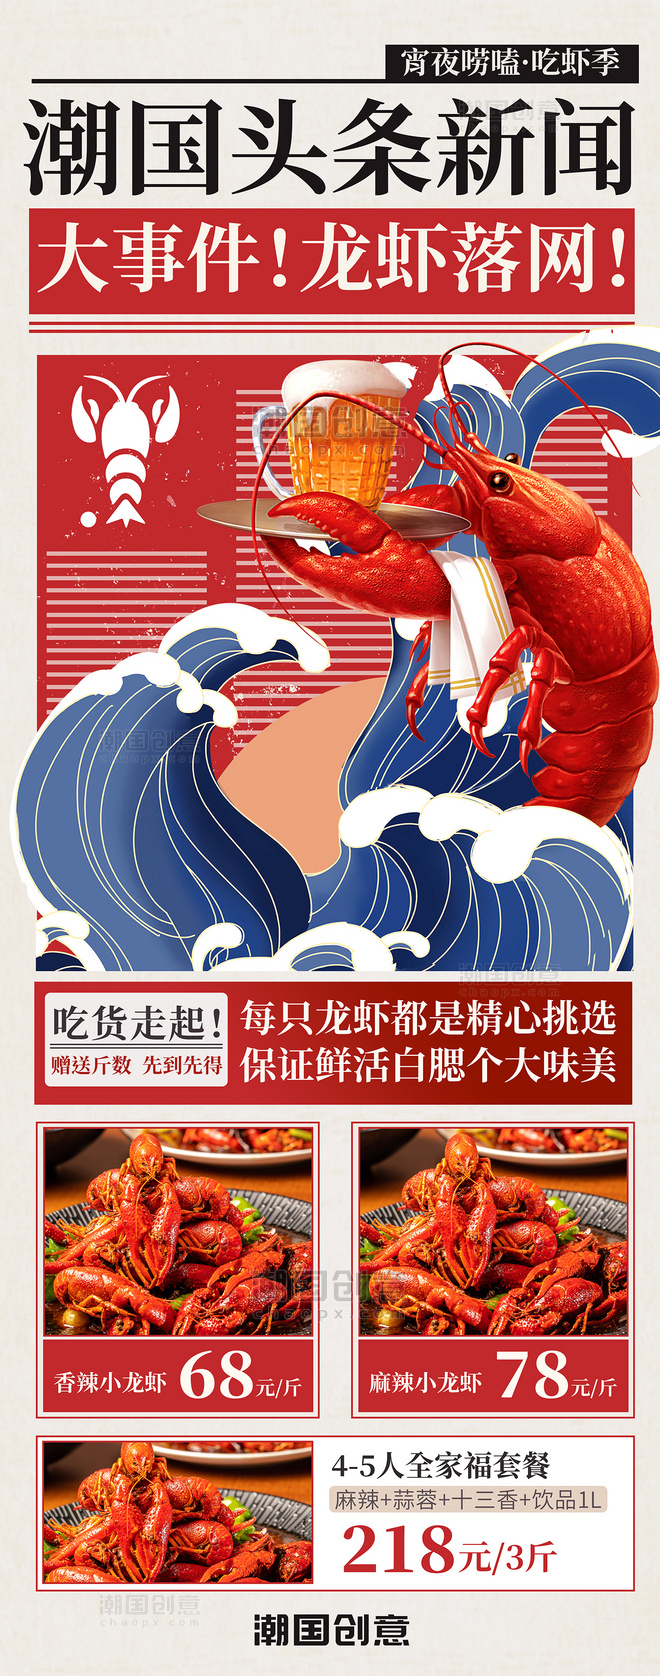 夏季夏天夜宵小龙虾餐饮美食新闻头条促销优惠活动长图海报